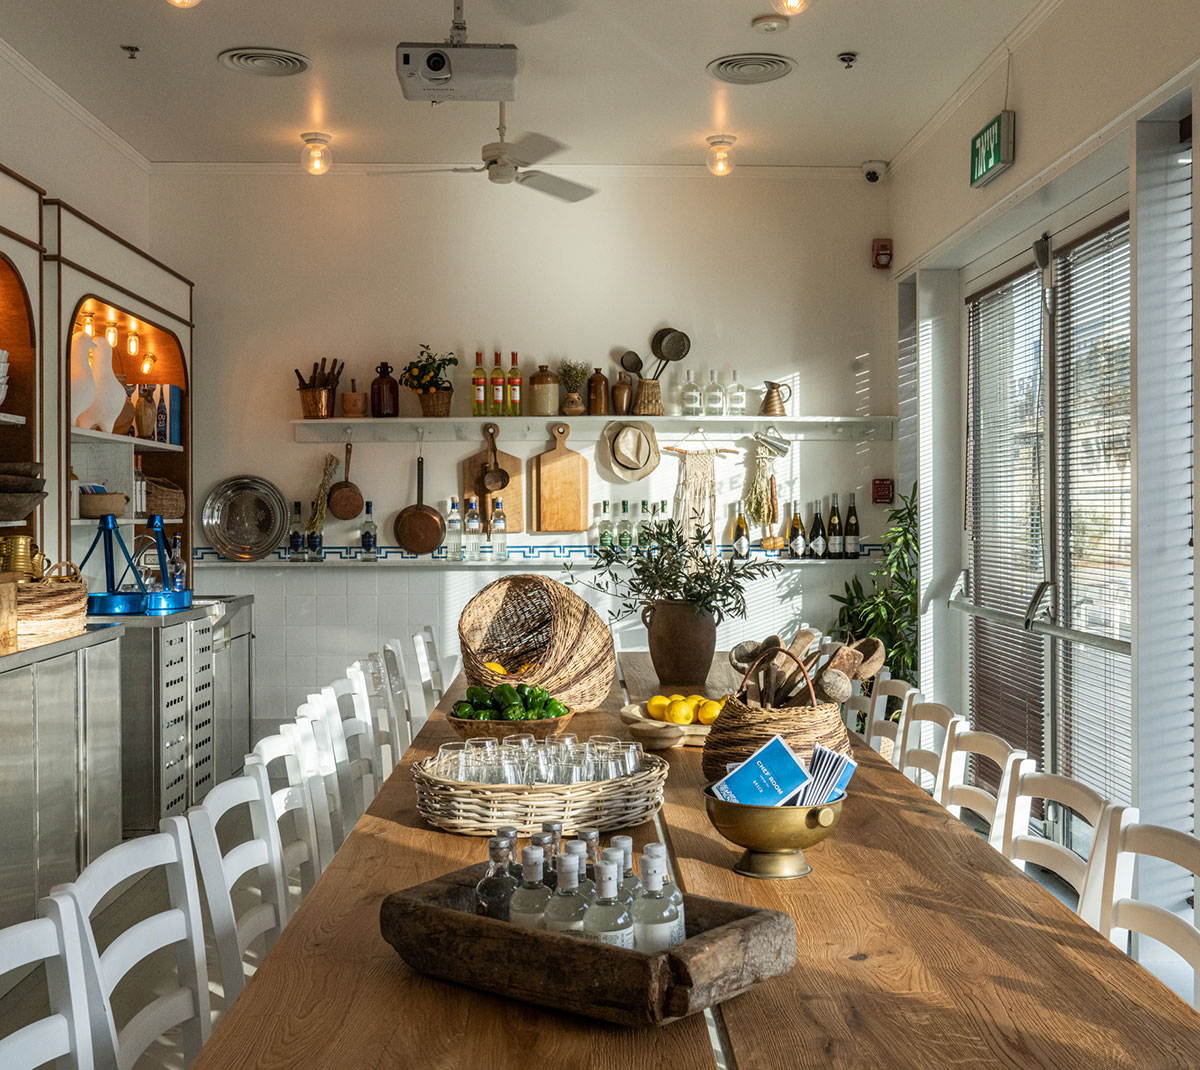 חדרי שף פרטיים בתל אביב והרצליה